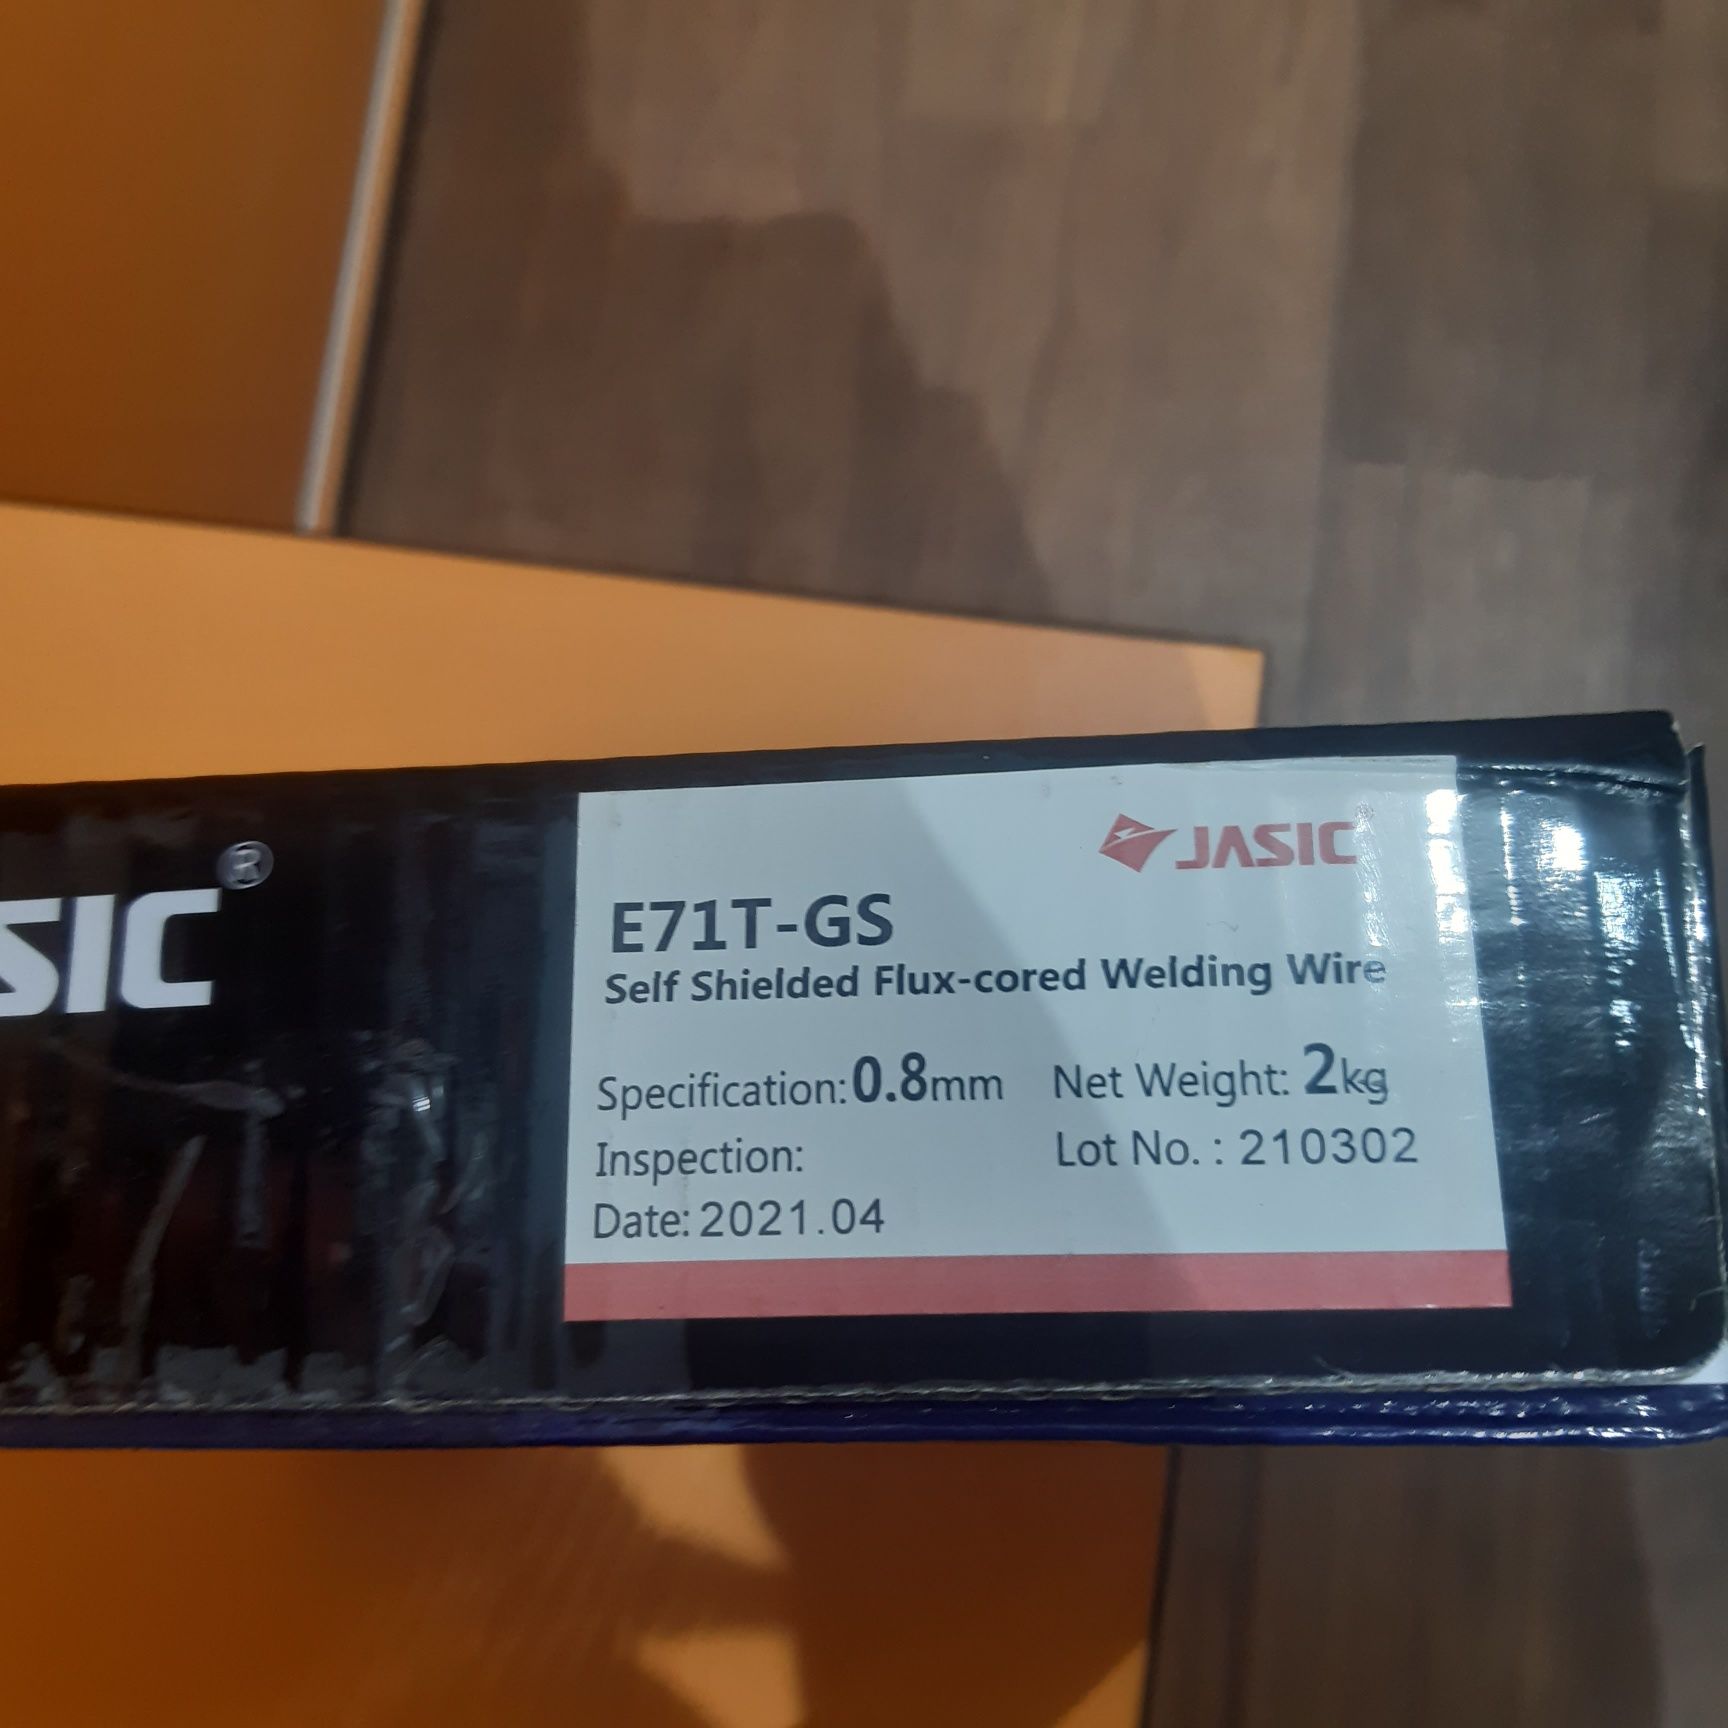 Порошковая нержавеющая сварочная проволока  марки E71T-GS 0.8 JASIC